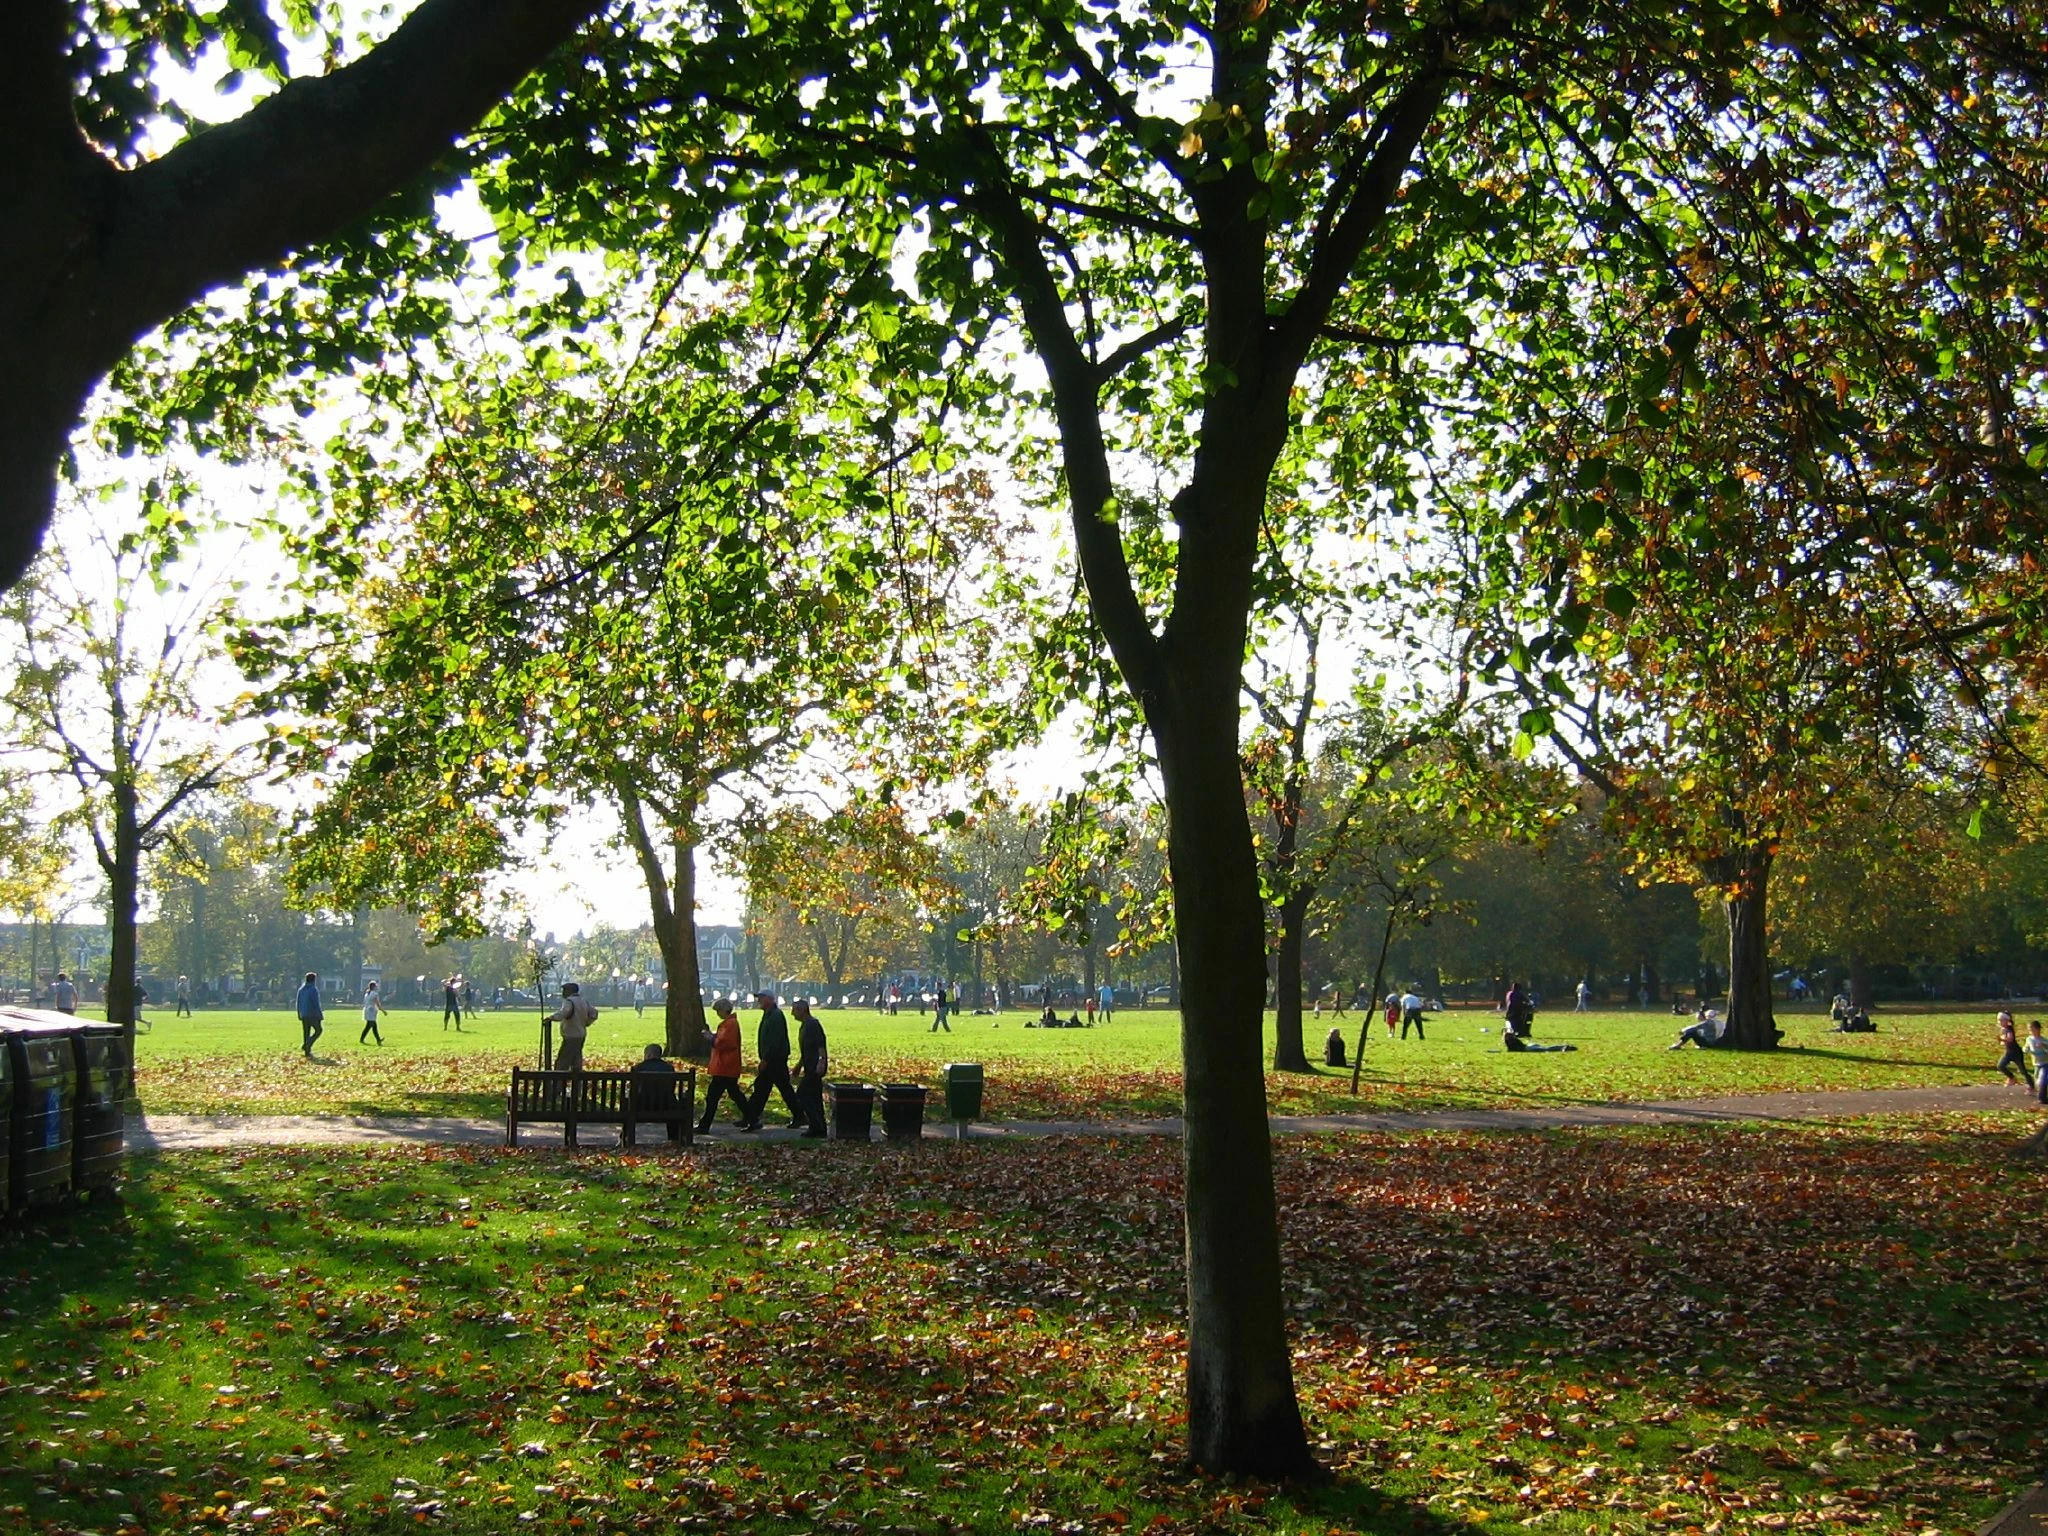 Queen's Park, London